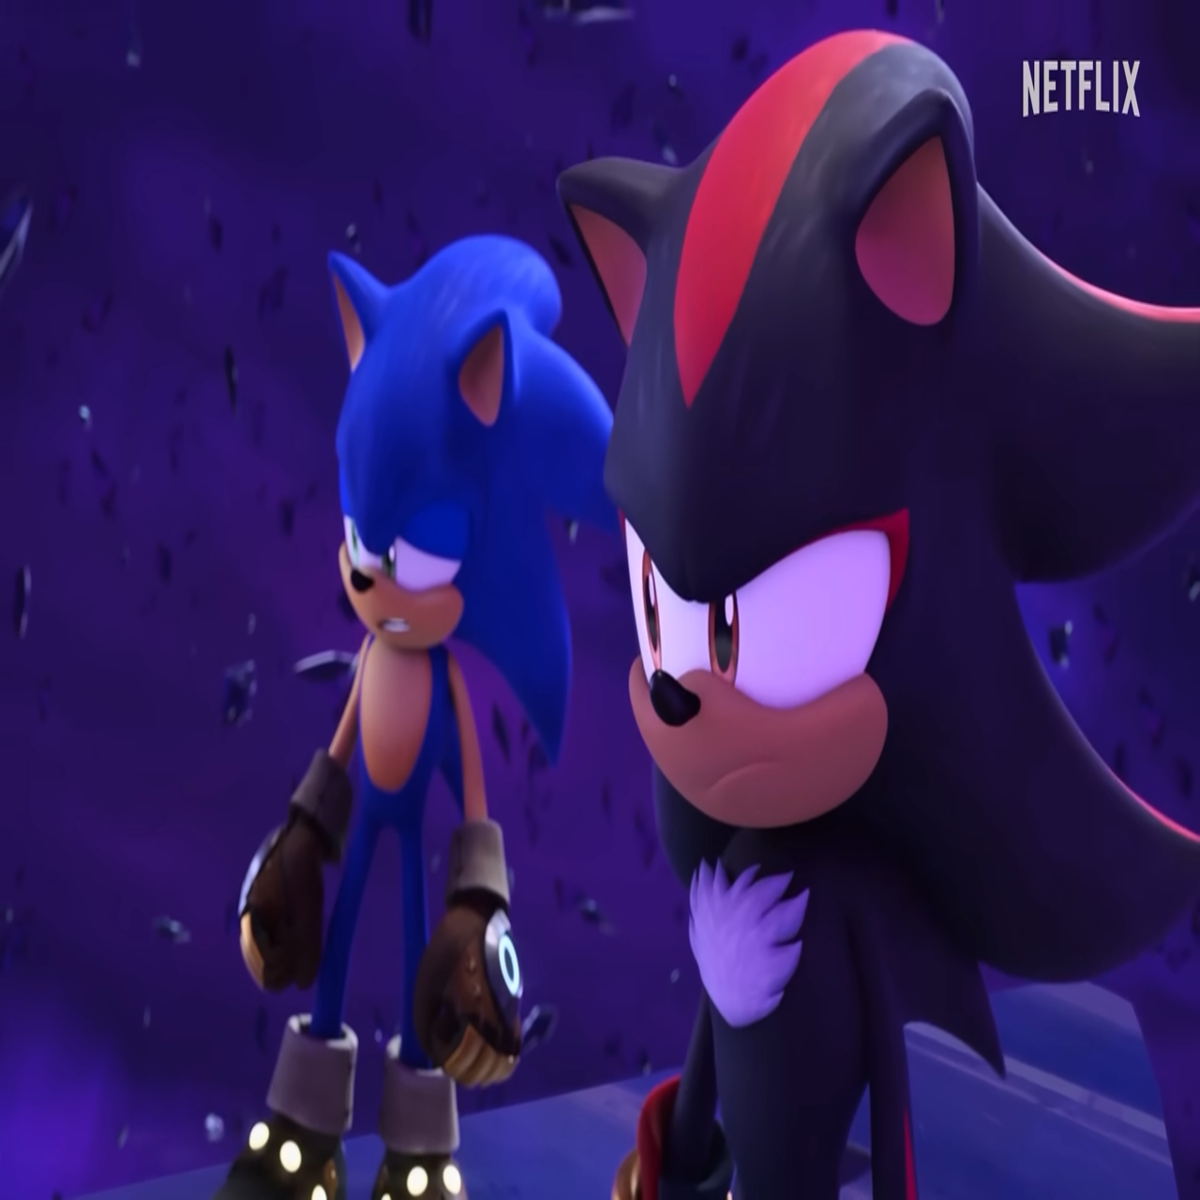 Sonic Prime Season 2 Trailer (2023)